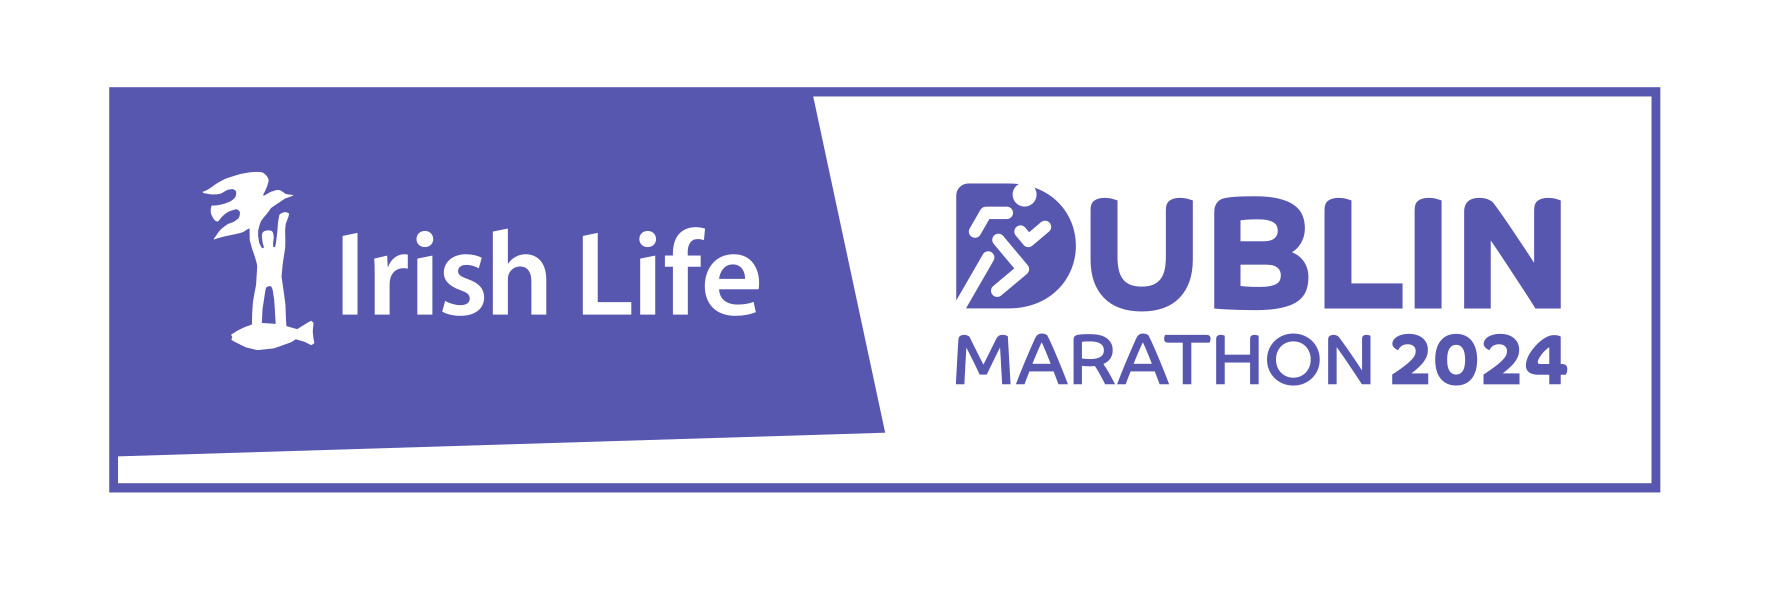 Irish Life Dublin Marathon 2024 | Training Plans-2019 - Irish Life ...